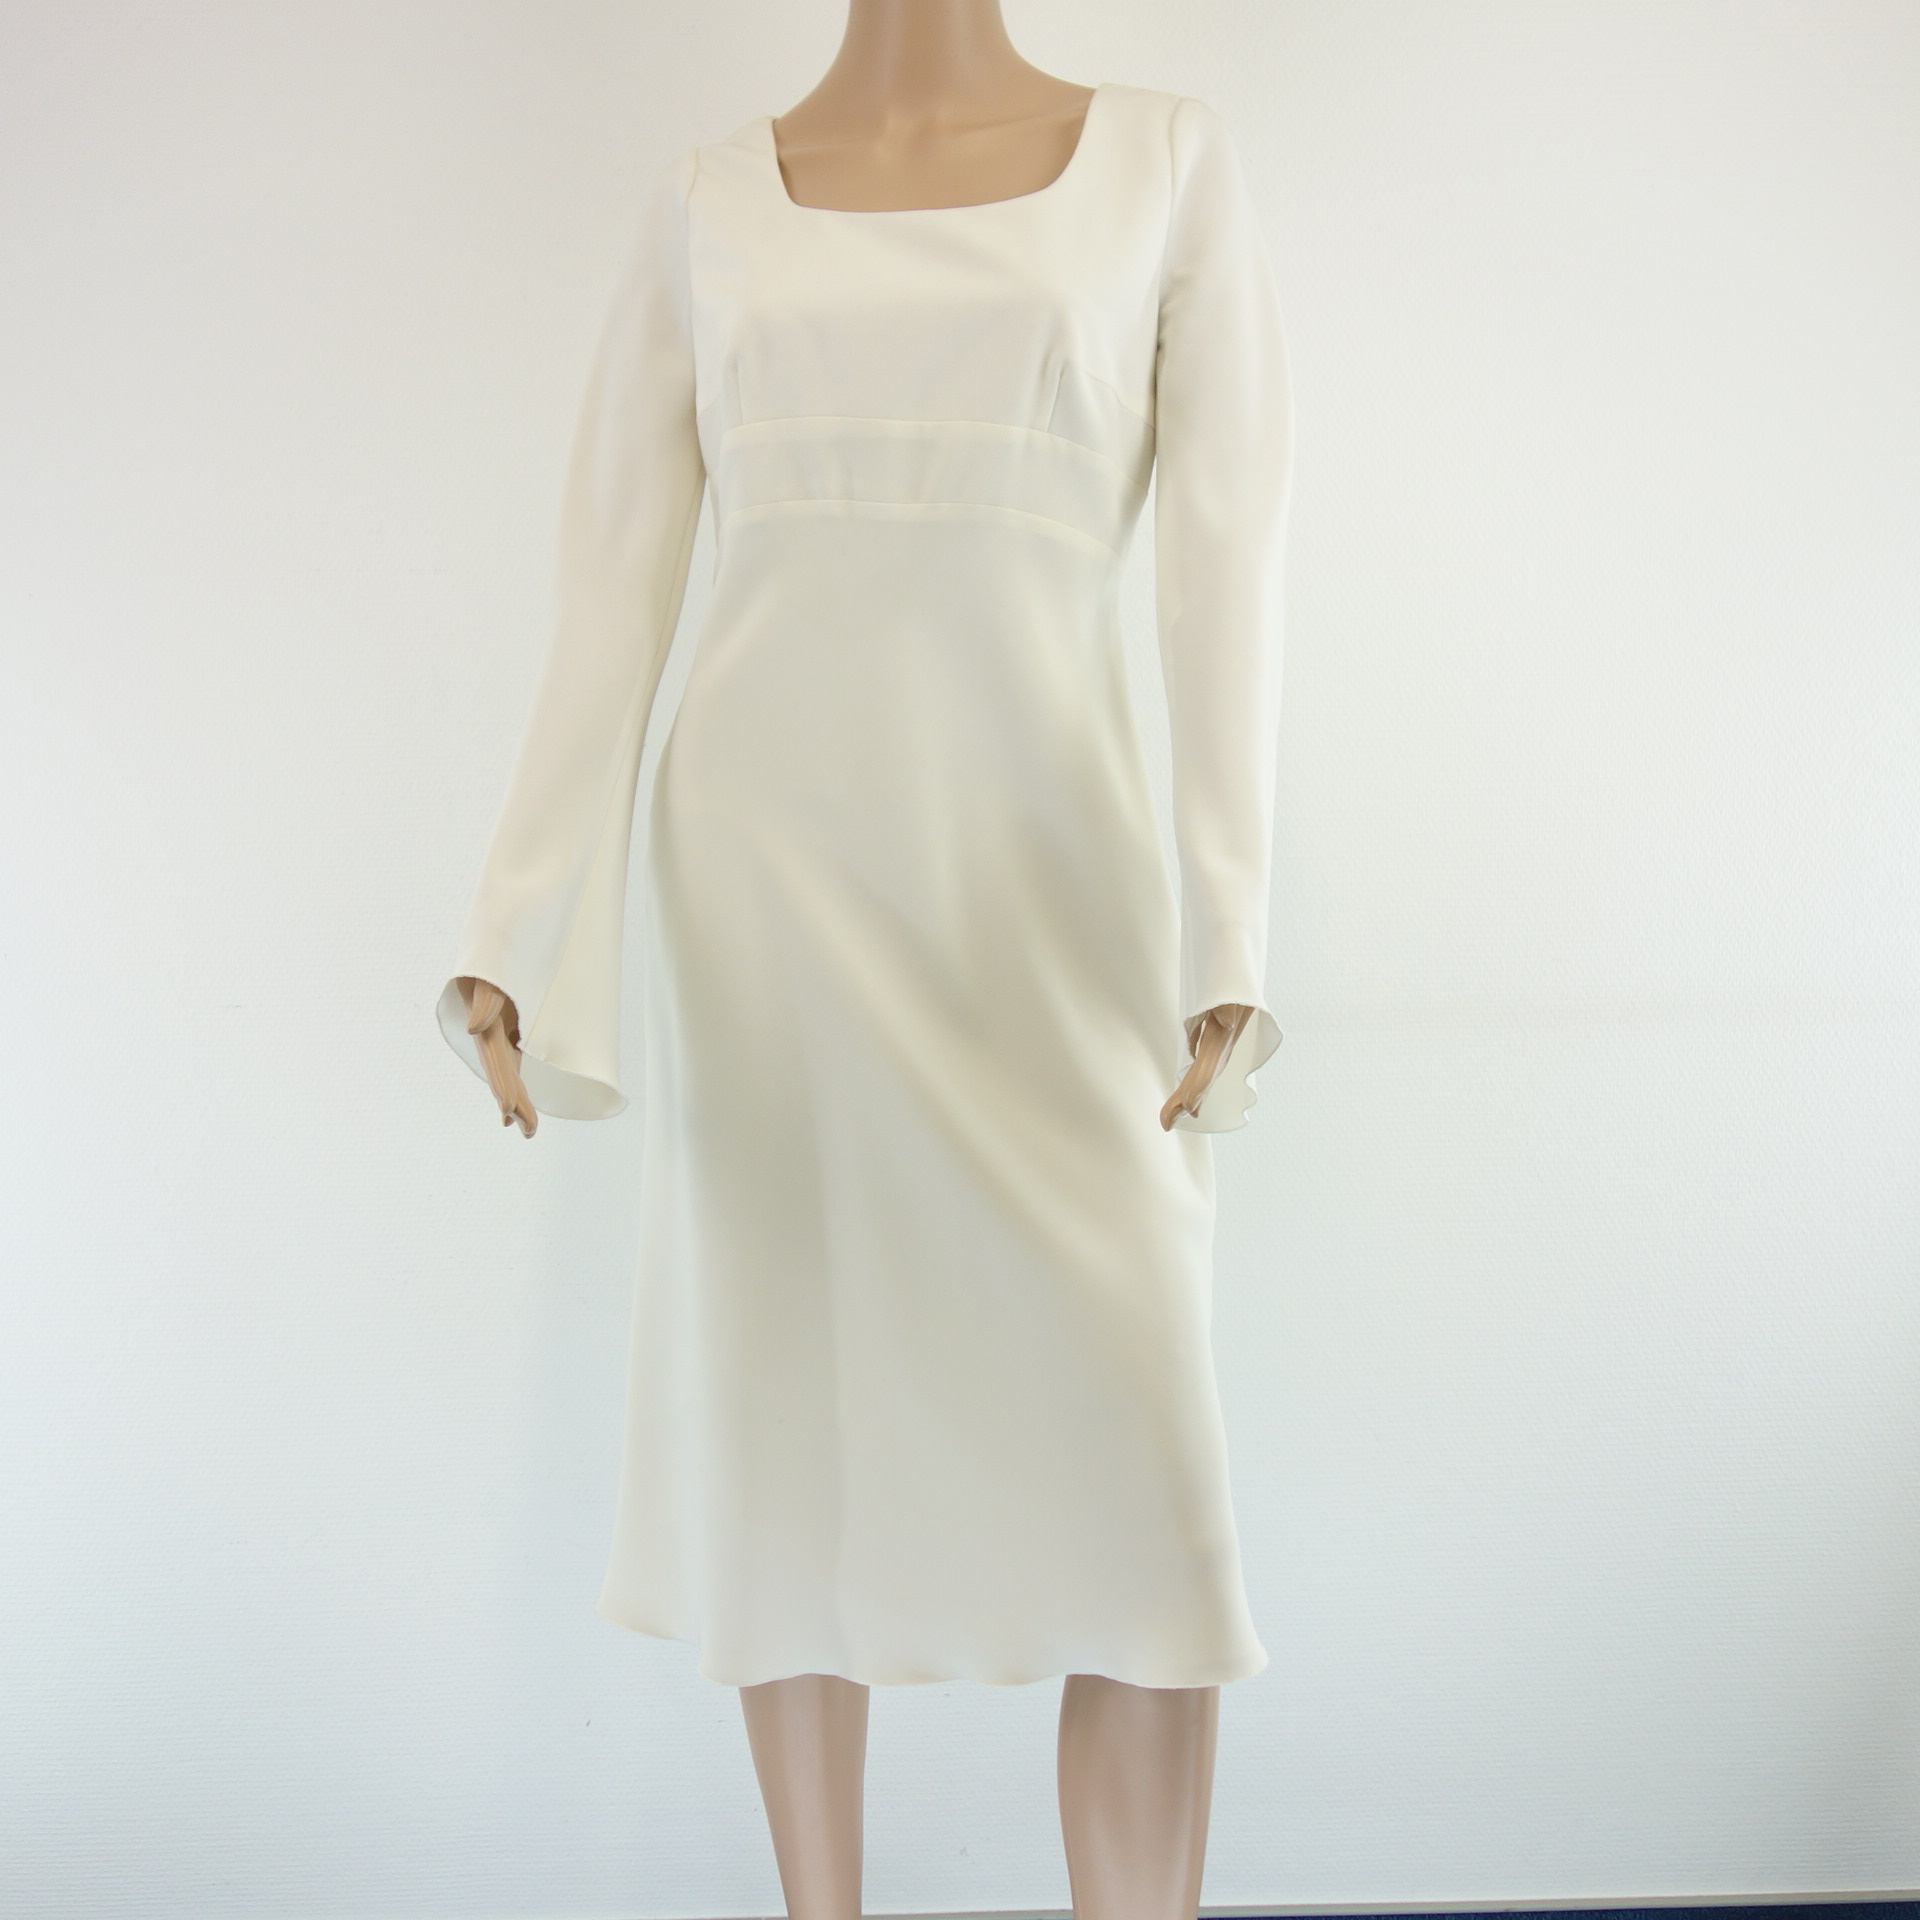 Kleid BETTINA SCHOENBACH Damen Kleid Weiß Festlich Schwingend Größe 38